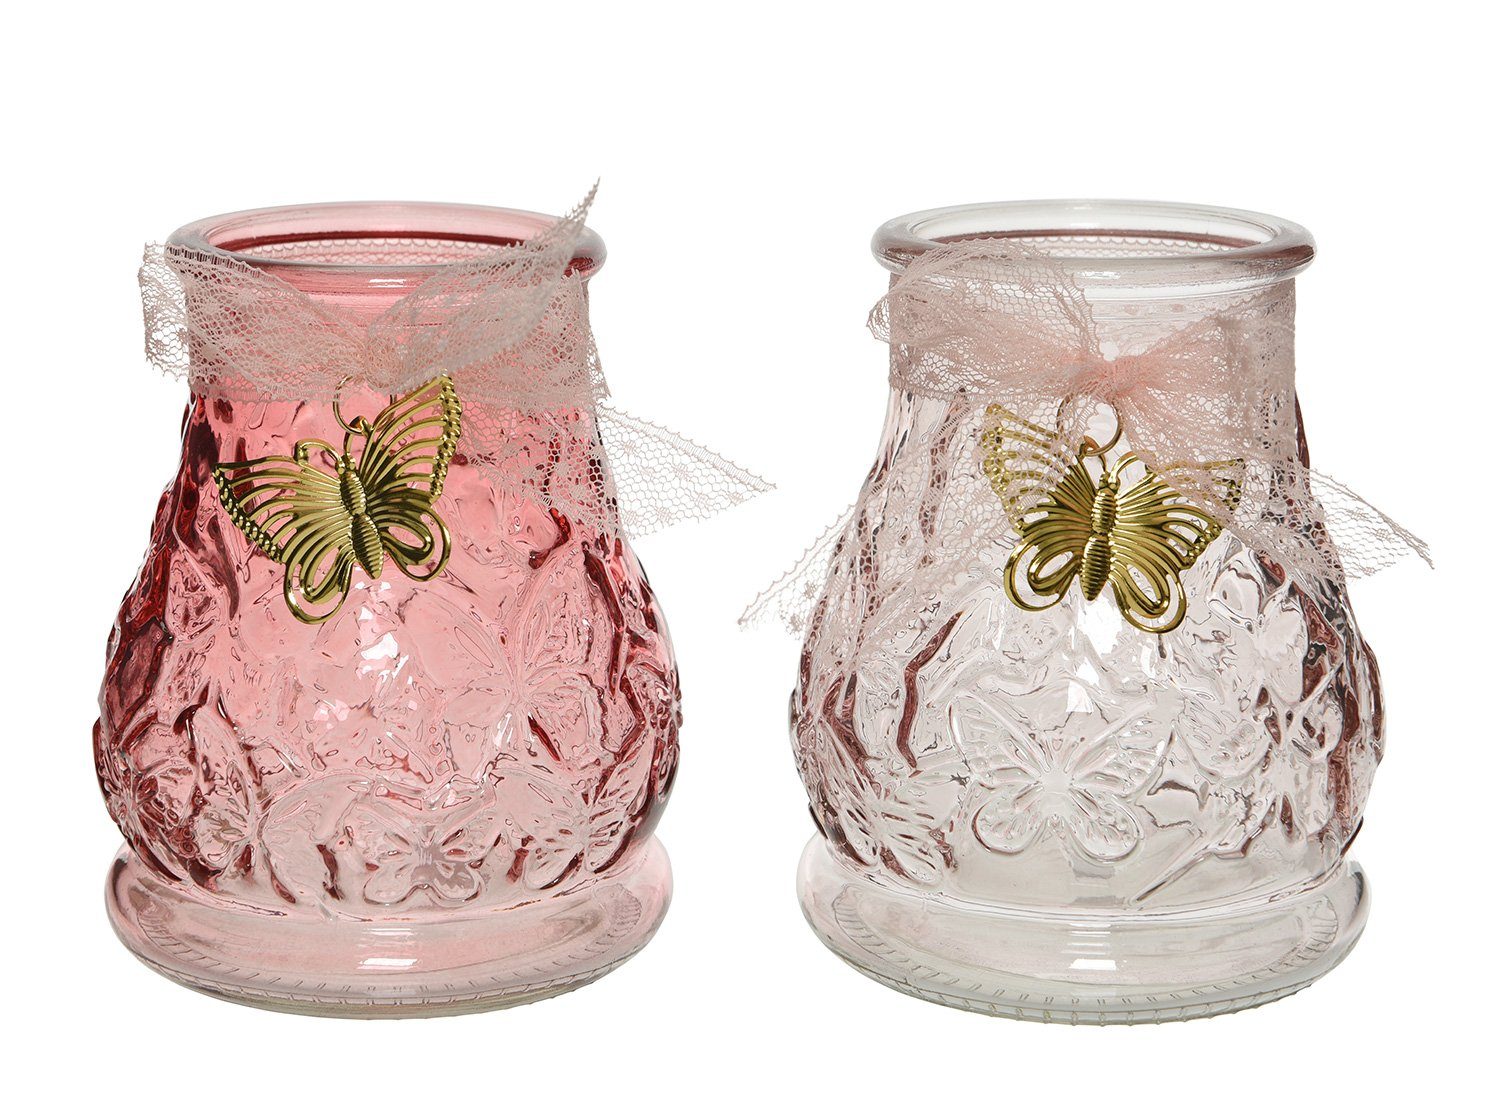 Decoris season decorations Windlicht, Windlicht Glas Schmetterling 11cm, 1 Stück sortiert